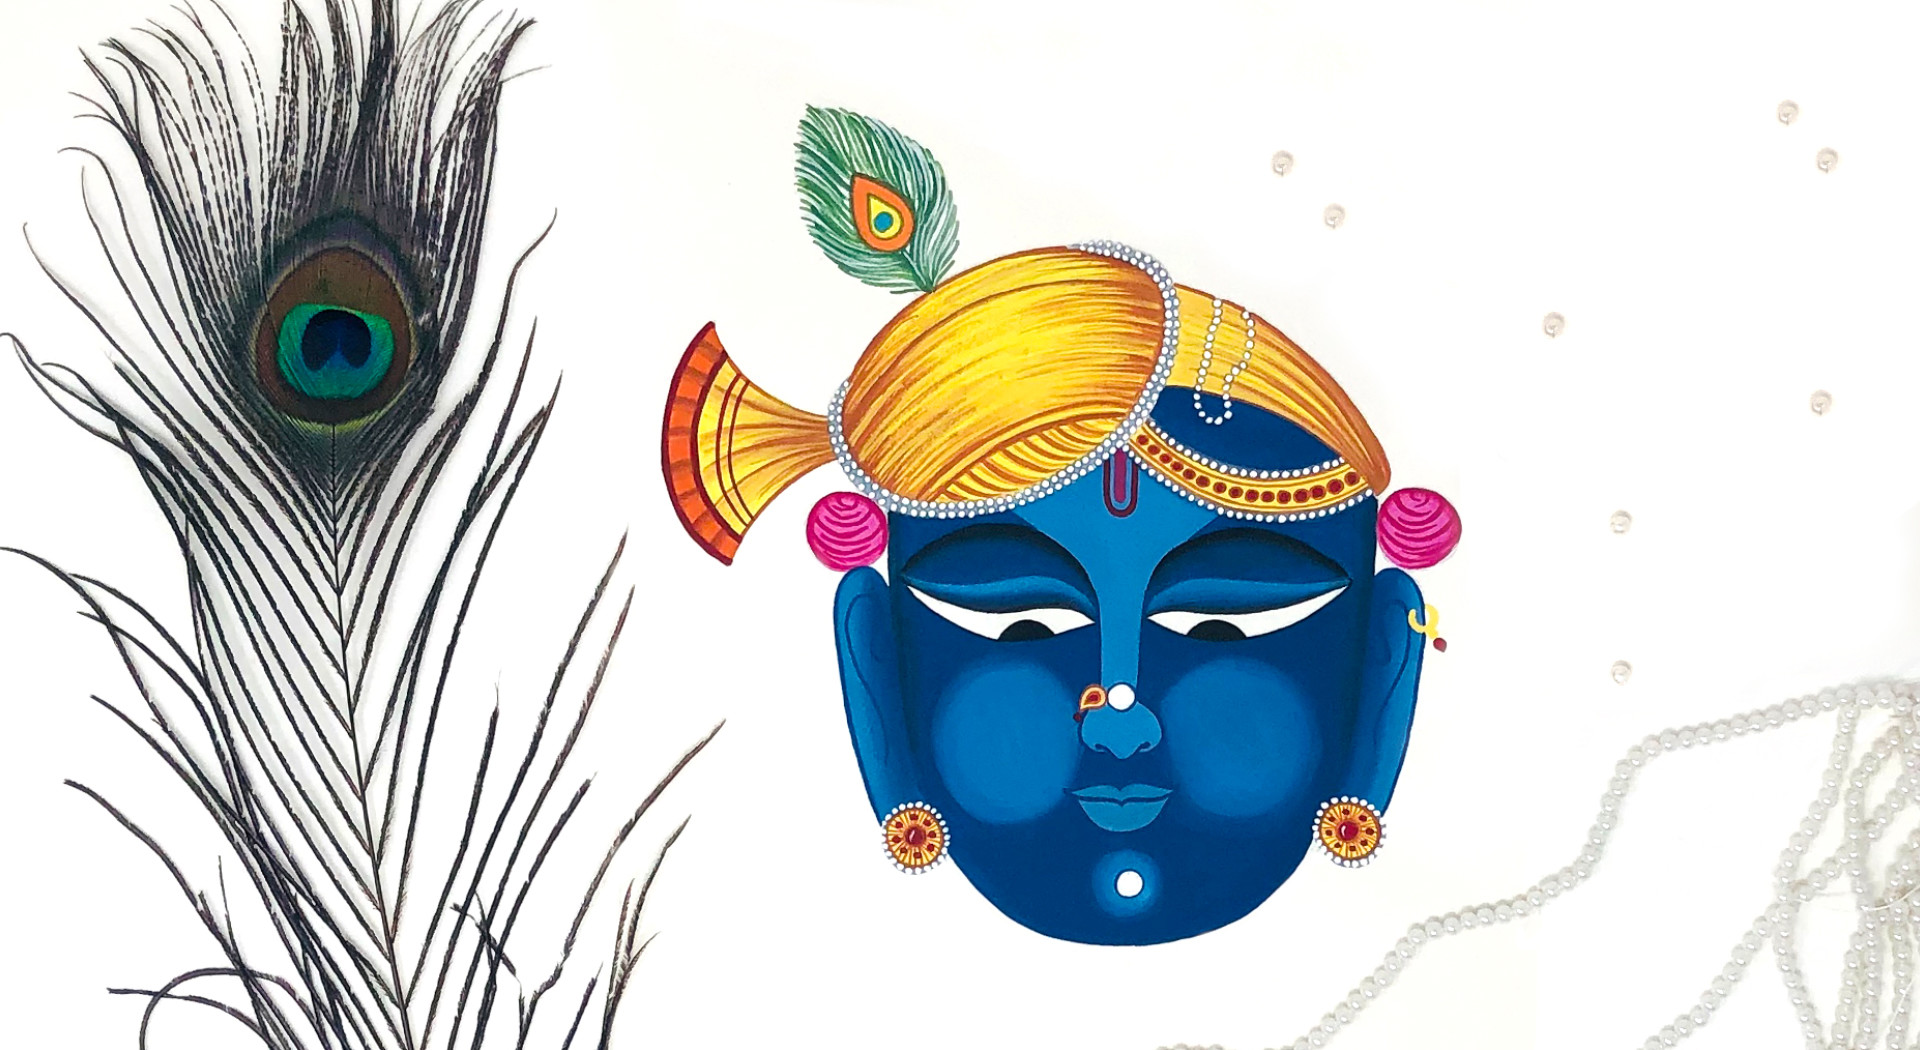 Sujalgupta1111  Realistic pencil sketch of Shrinathji  Facebook